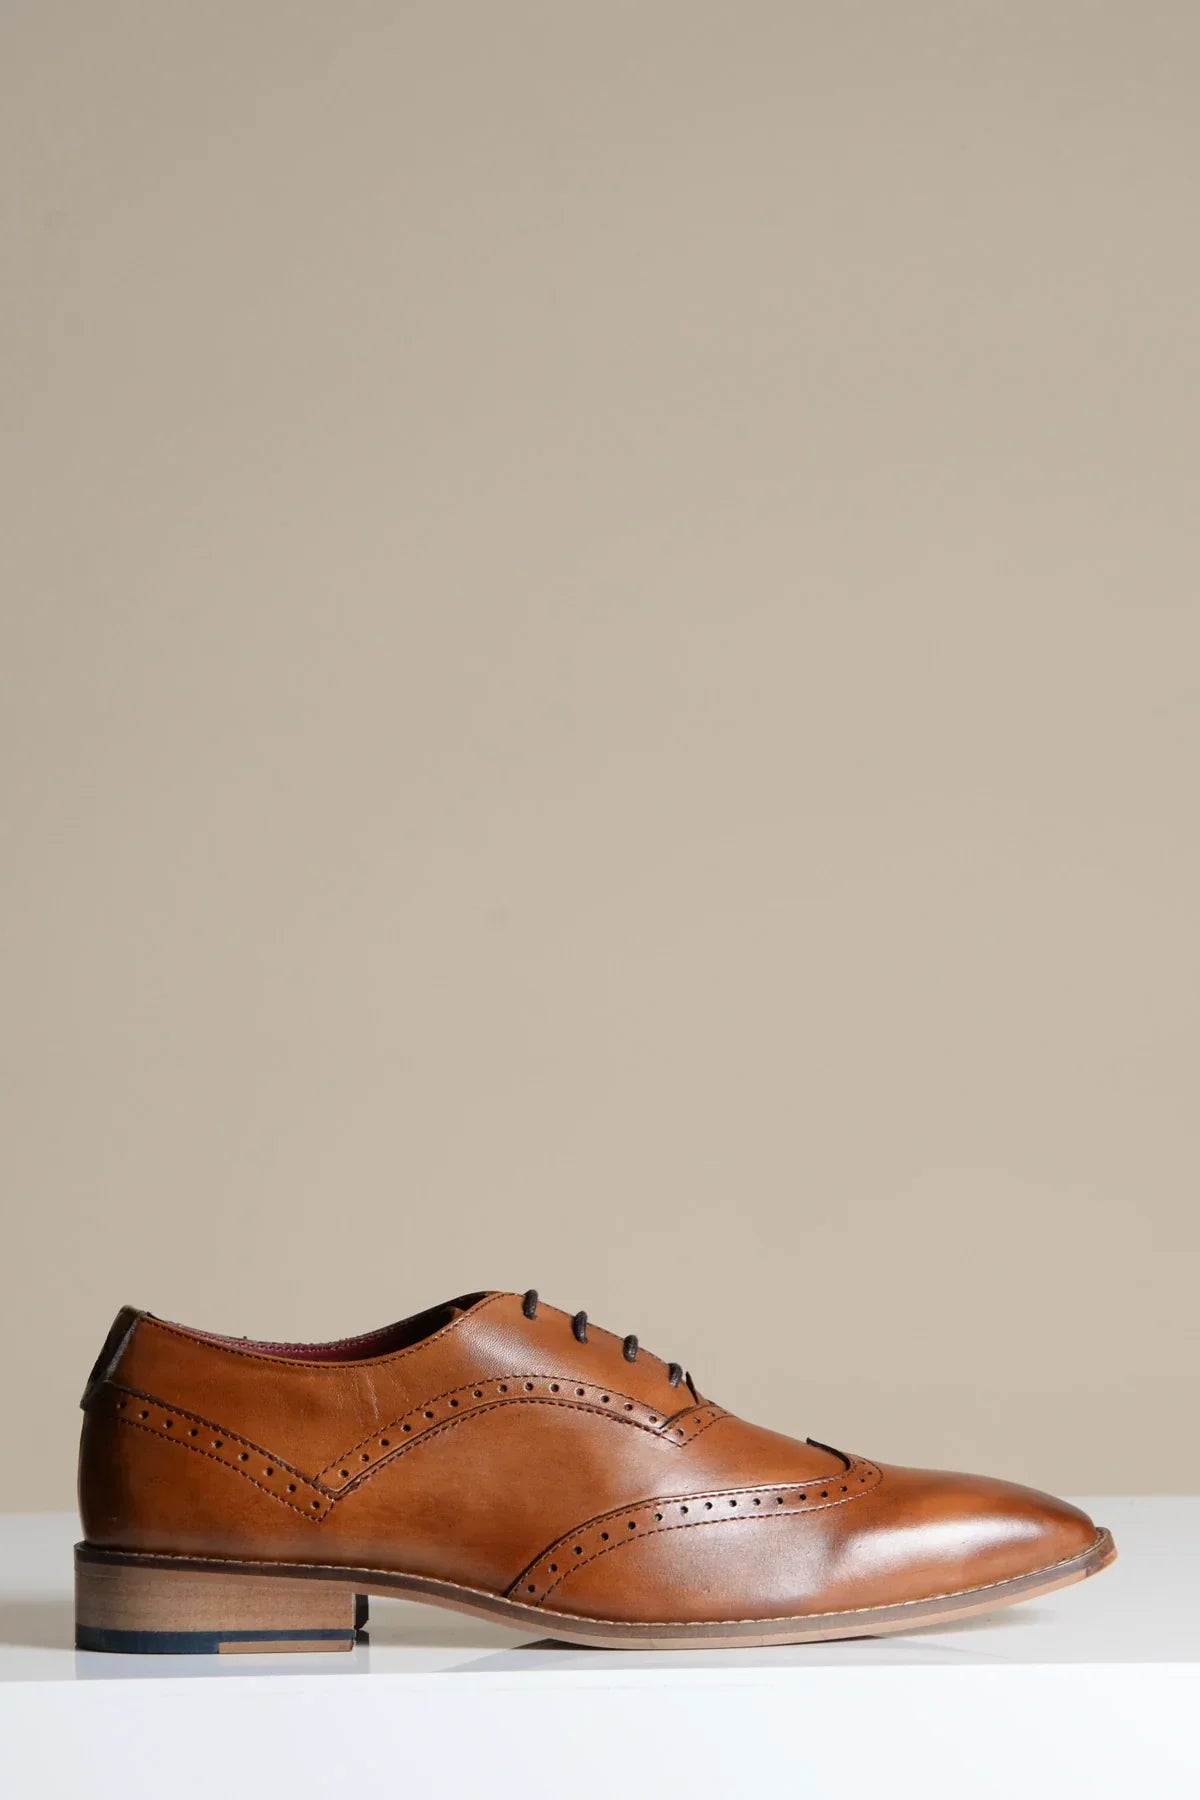 Hnedé kožené topánky, Marc Darcy Dawson - Wingtip brogue